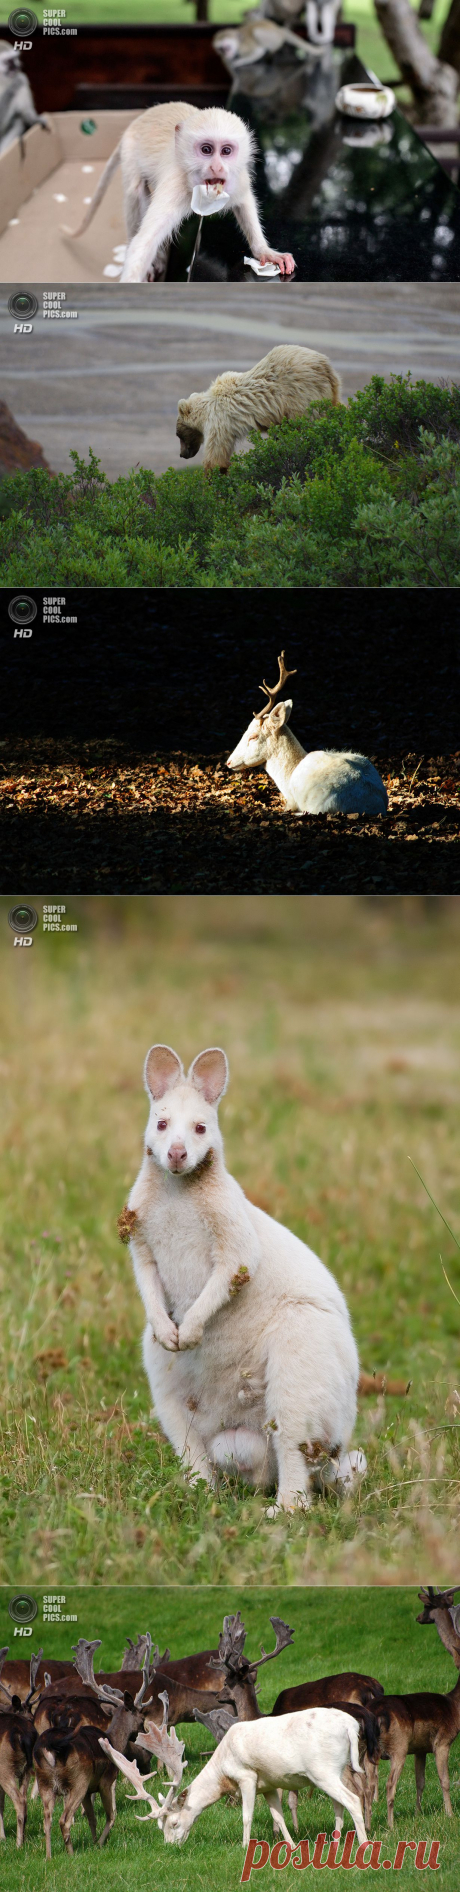 Животные-альбиносы (15 фото) — SuperCoolPics